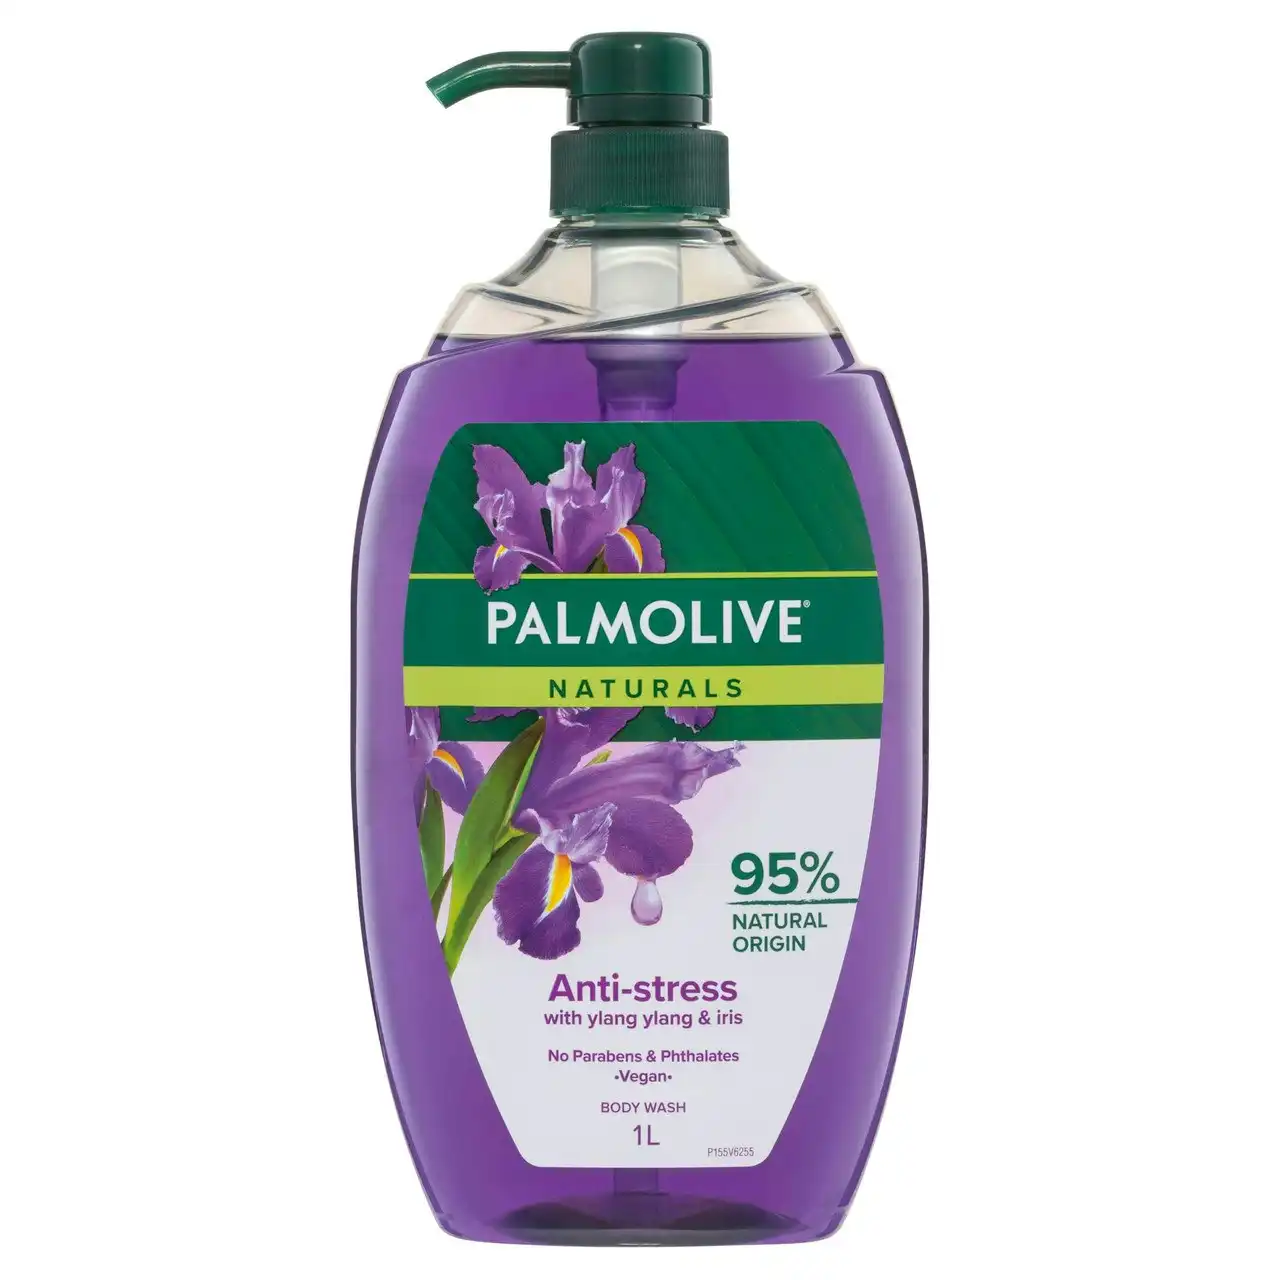 Palmolive Naturals Body Wash, 1L, Anti-Stress with Ylang Ylang & Iris, No Parabens Phthalates or Alcohol